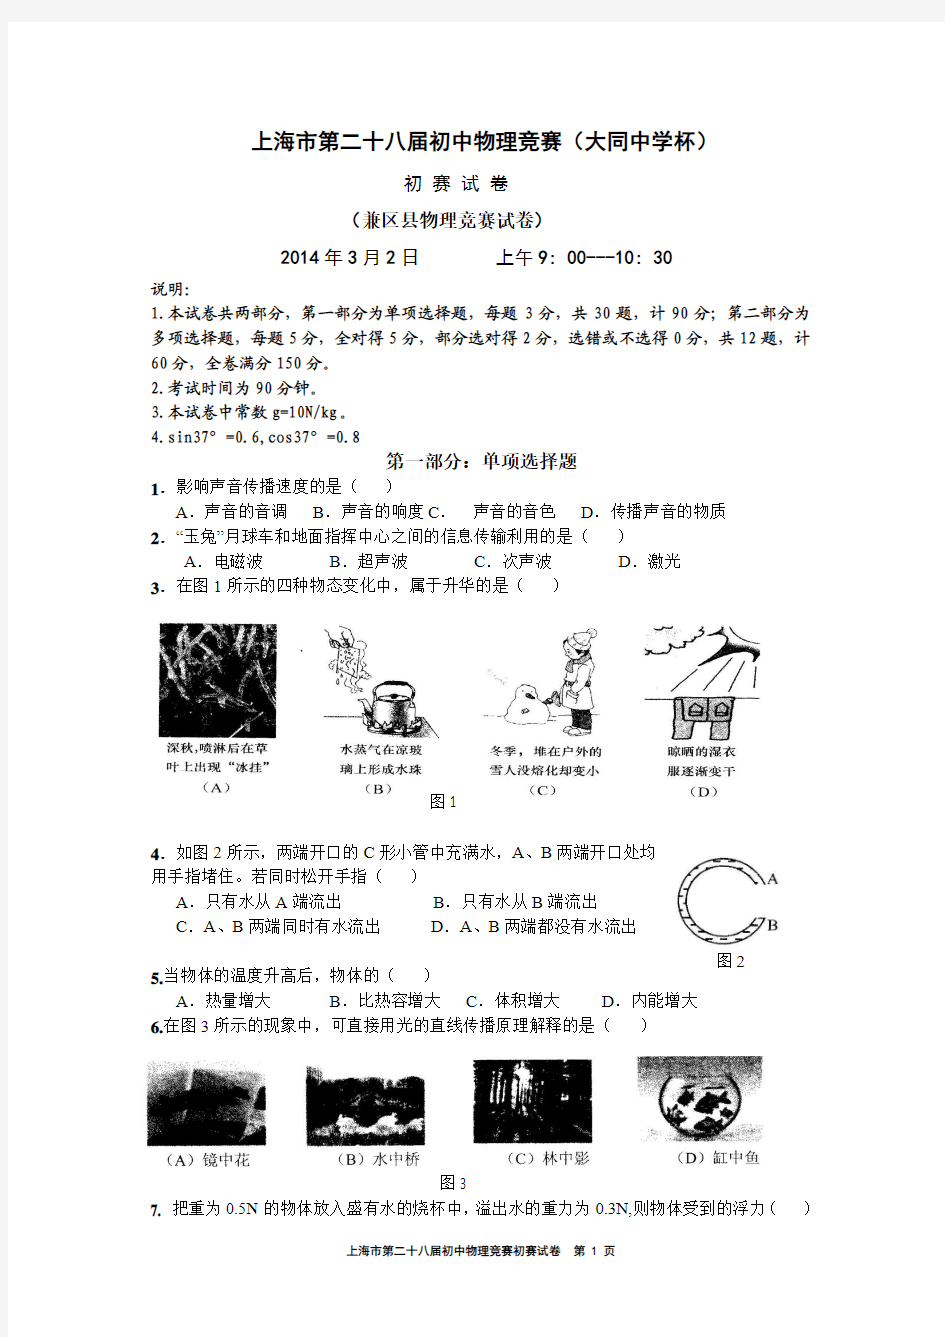 2014年上海大同杯物理竞赛初赛试卷(含答案)